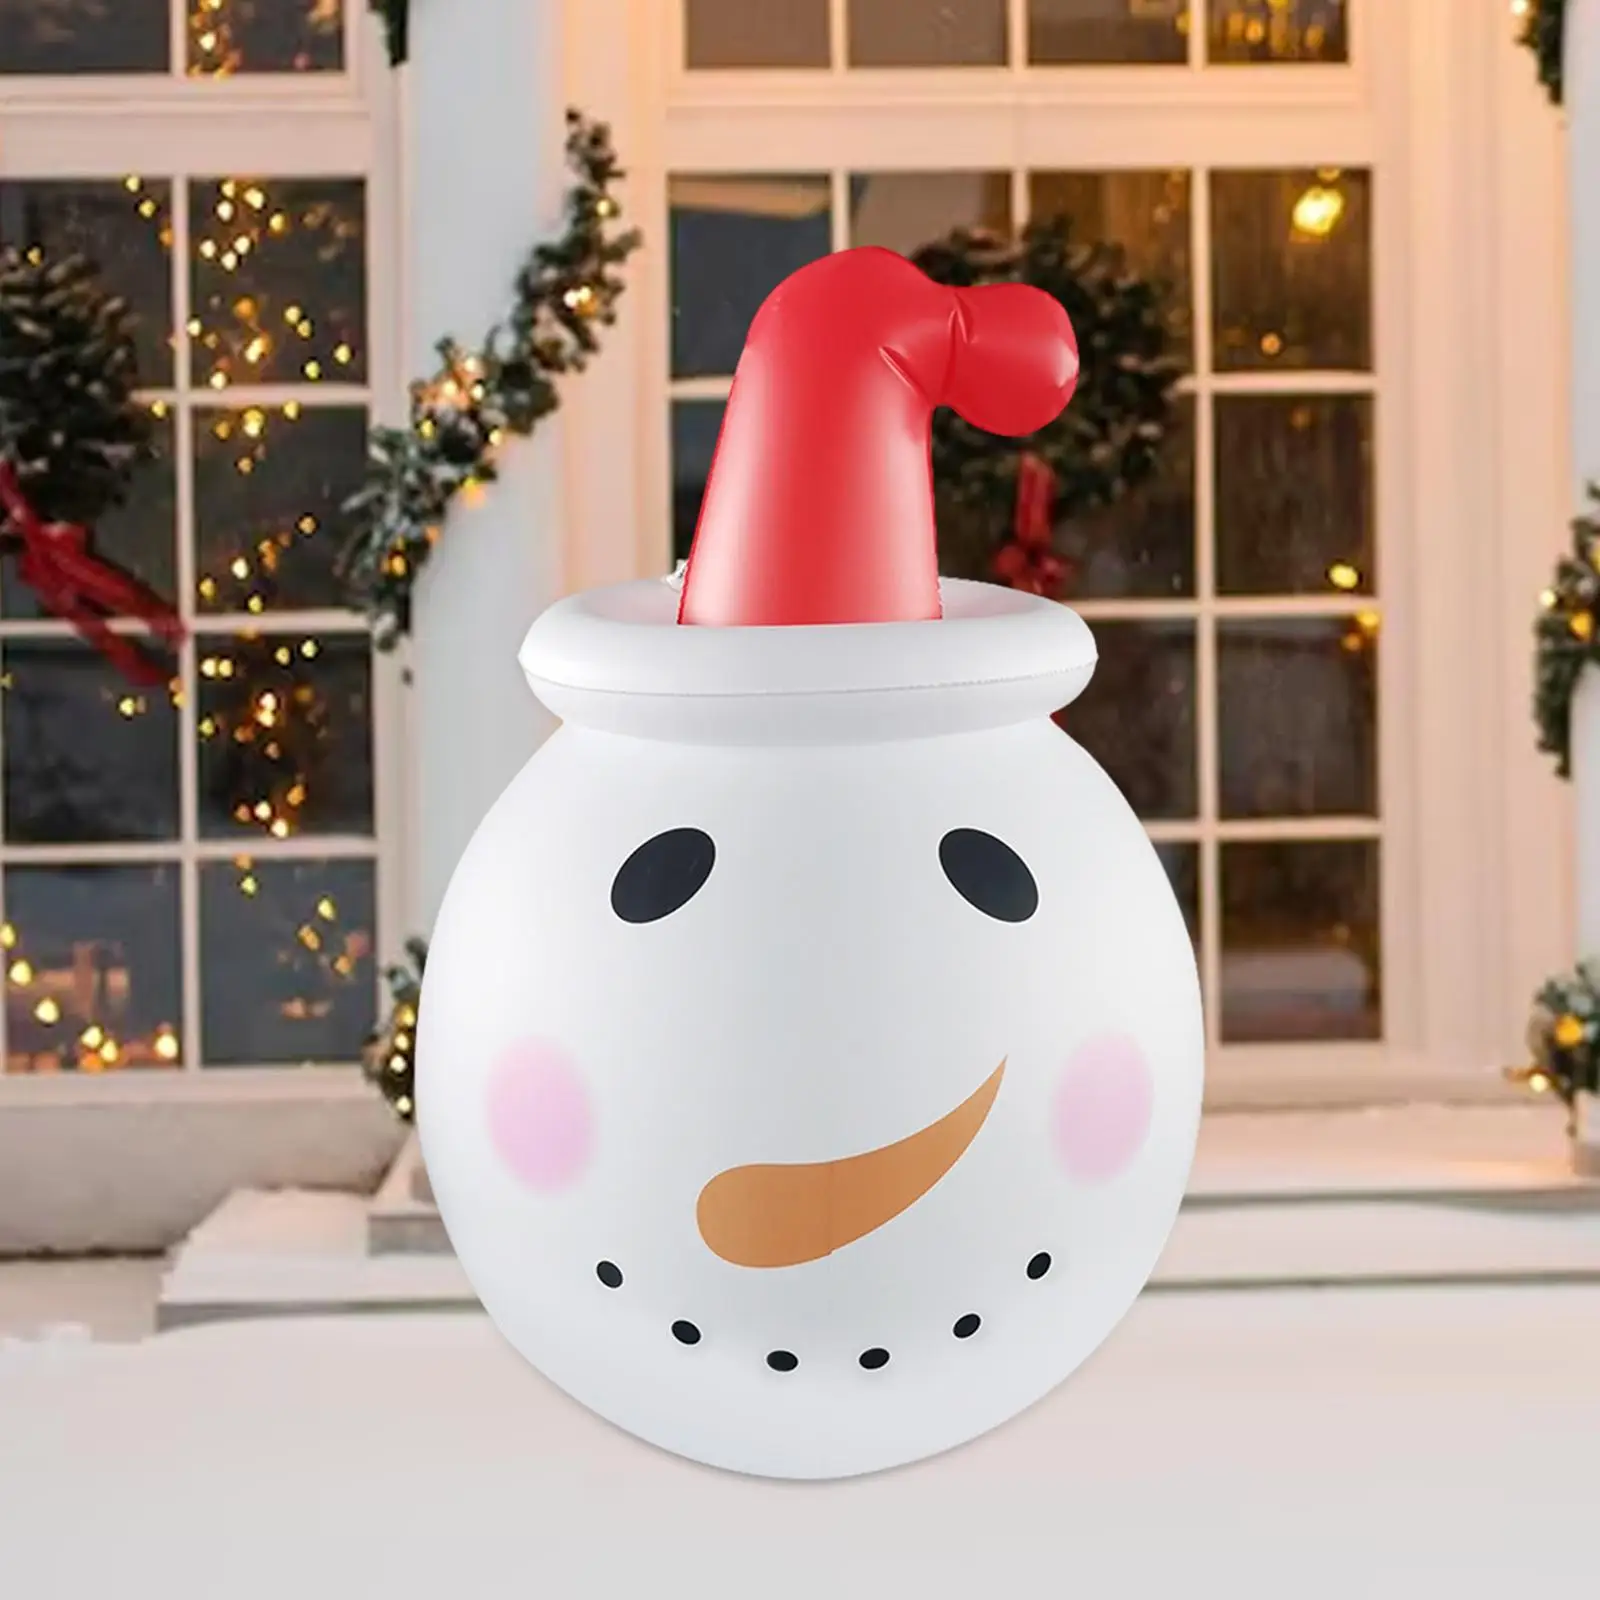 Christmas Inflatable Snowman Ornament Cute Art for Halloween Garden Backyard